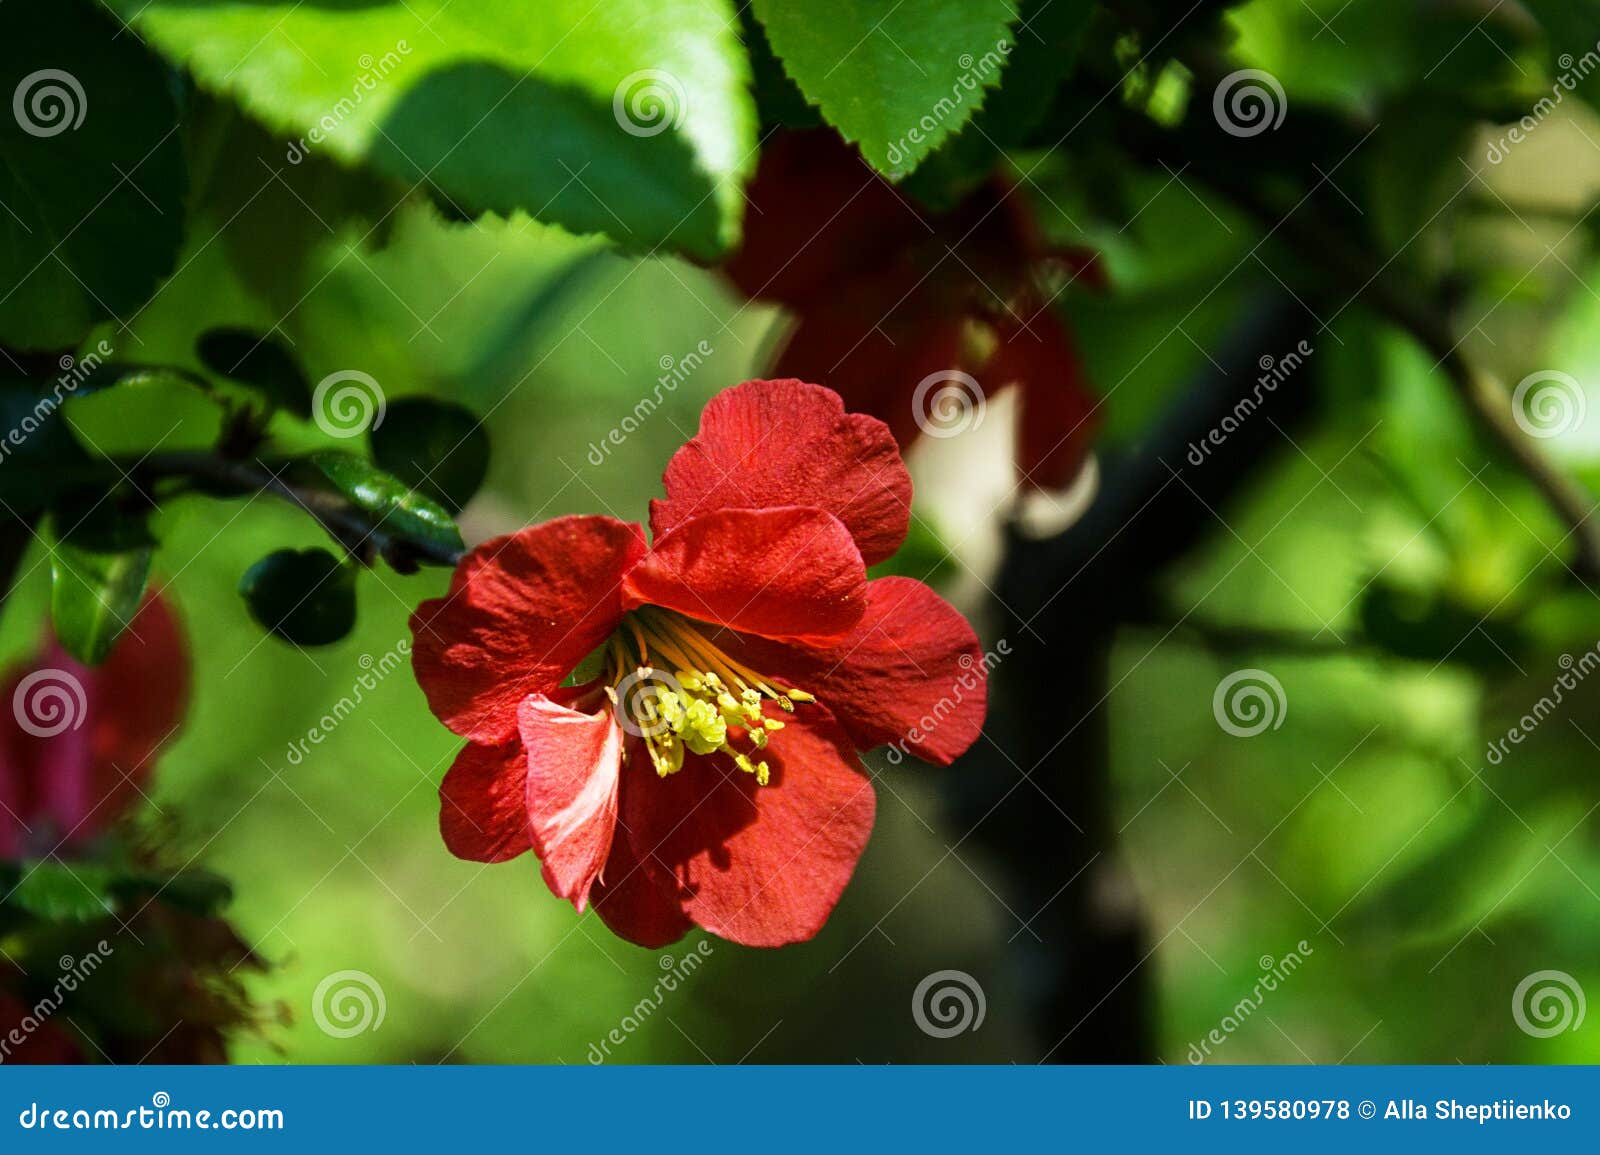 Fleur Rouge Avec Les Stamens Et Le Pistil Jaunes Photo stock - Image du  vert, fermer: 139580978